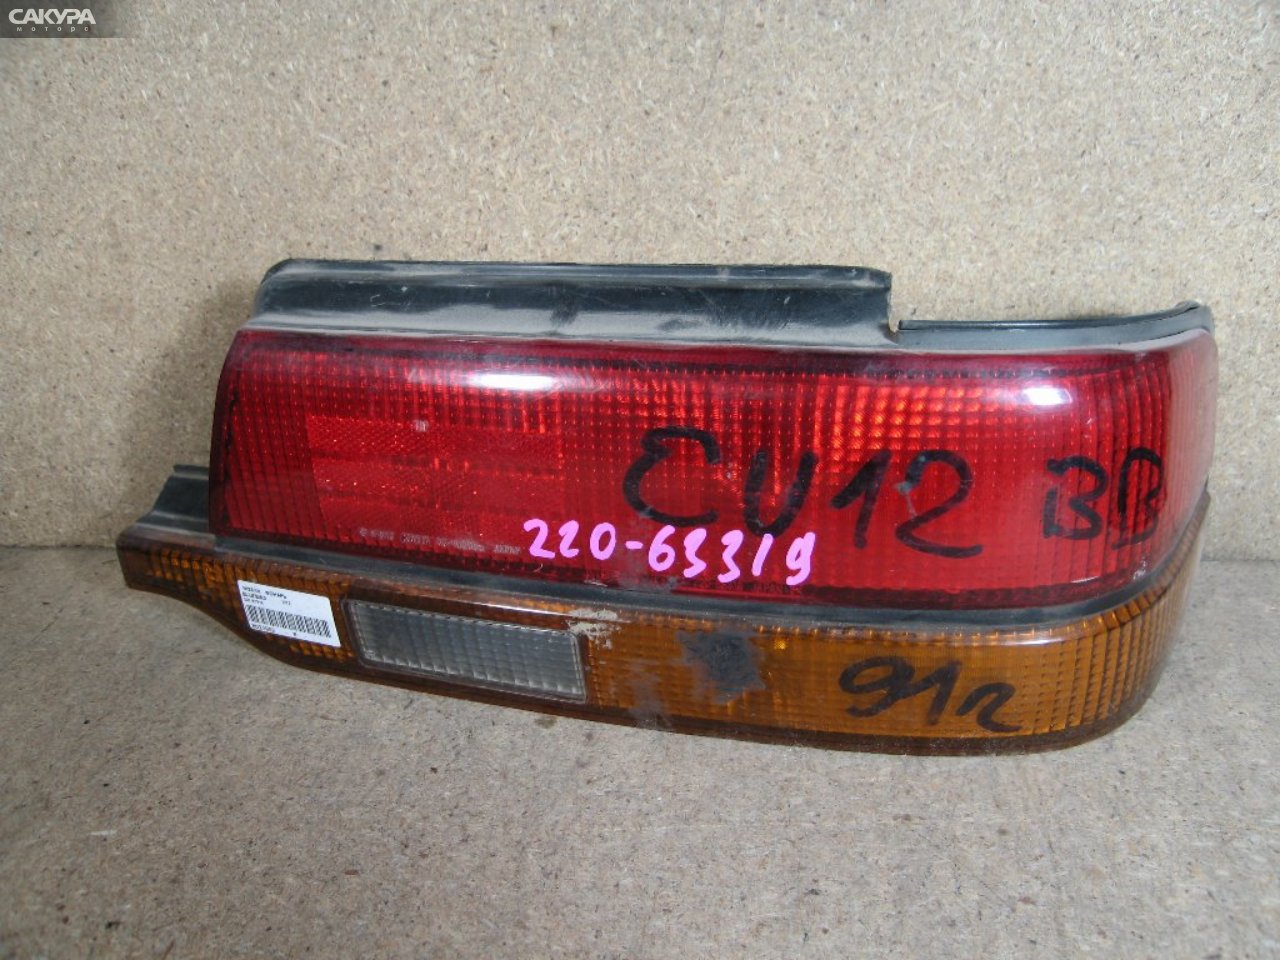 Фонарь стоп-сигнала правый Nissan Bluebird U12 220-63319: купить в Сакура Абакан.